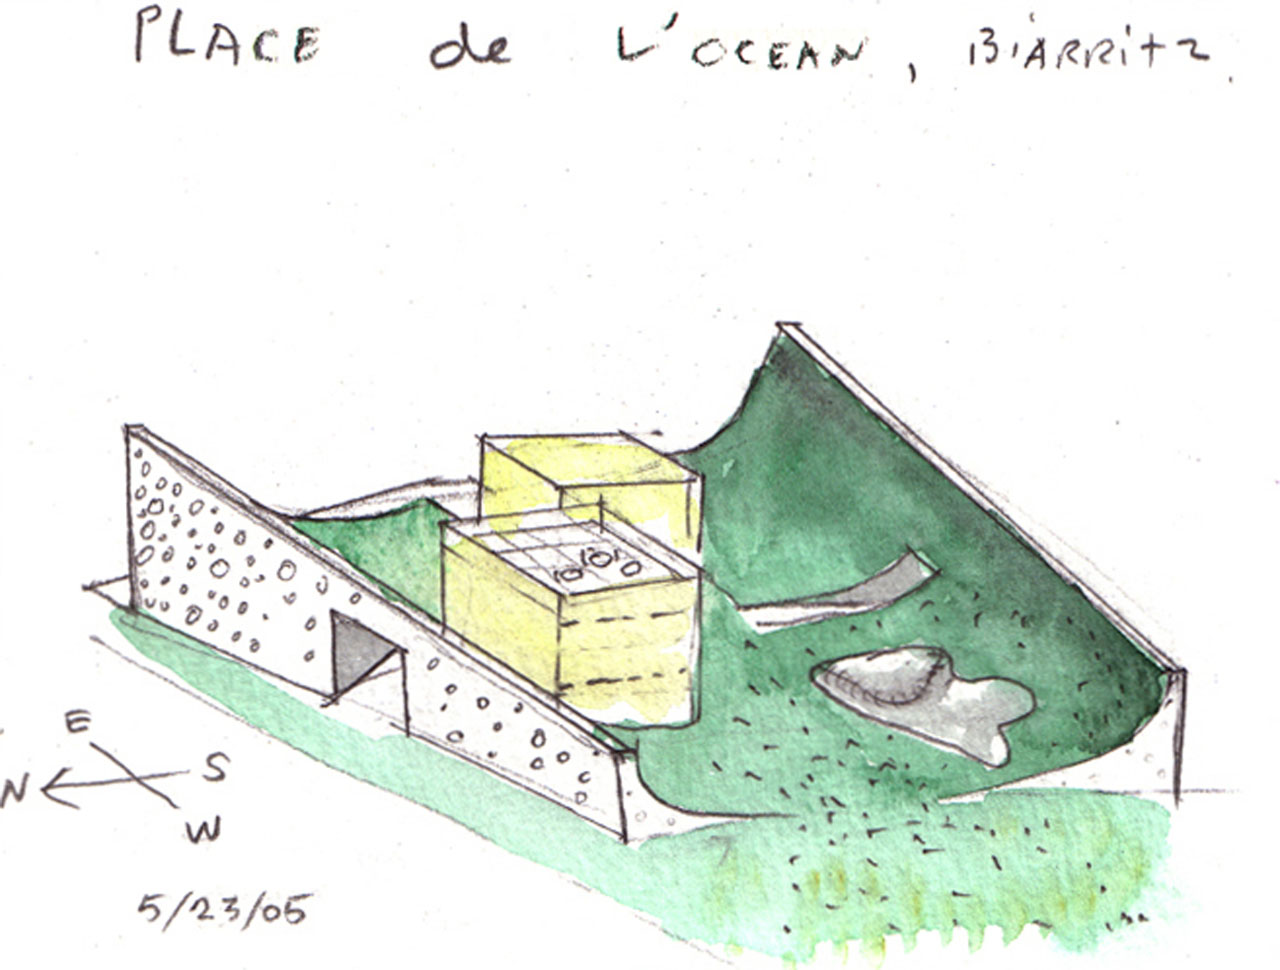 Water color concept sketch of the Cité de l'Océan et du Surf Museum by Steven Holl Architects